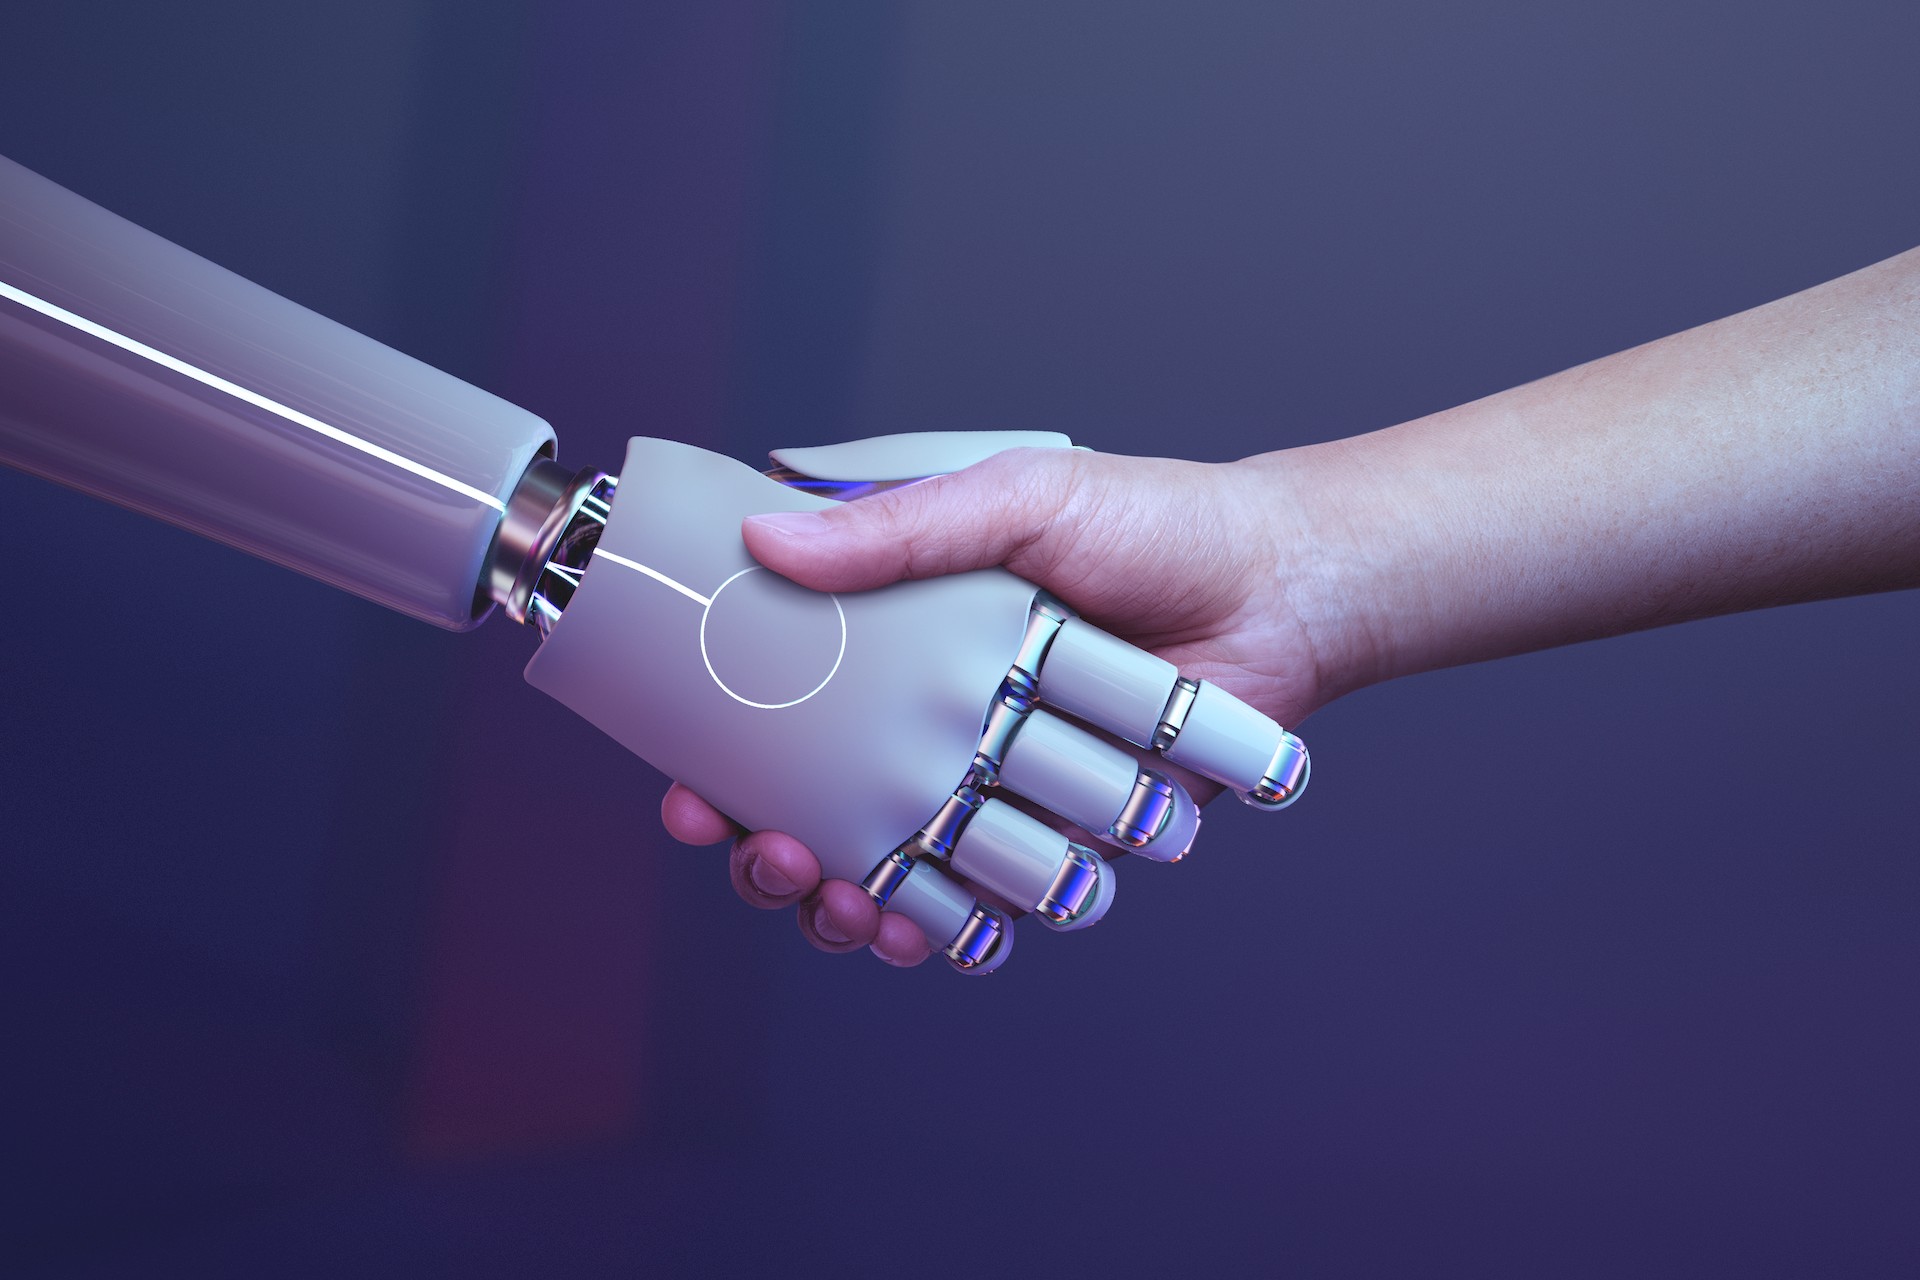 Pas à pas vers l’intelligence artificielle dont nous rêvons avec AI Alliance